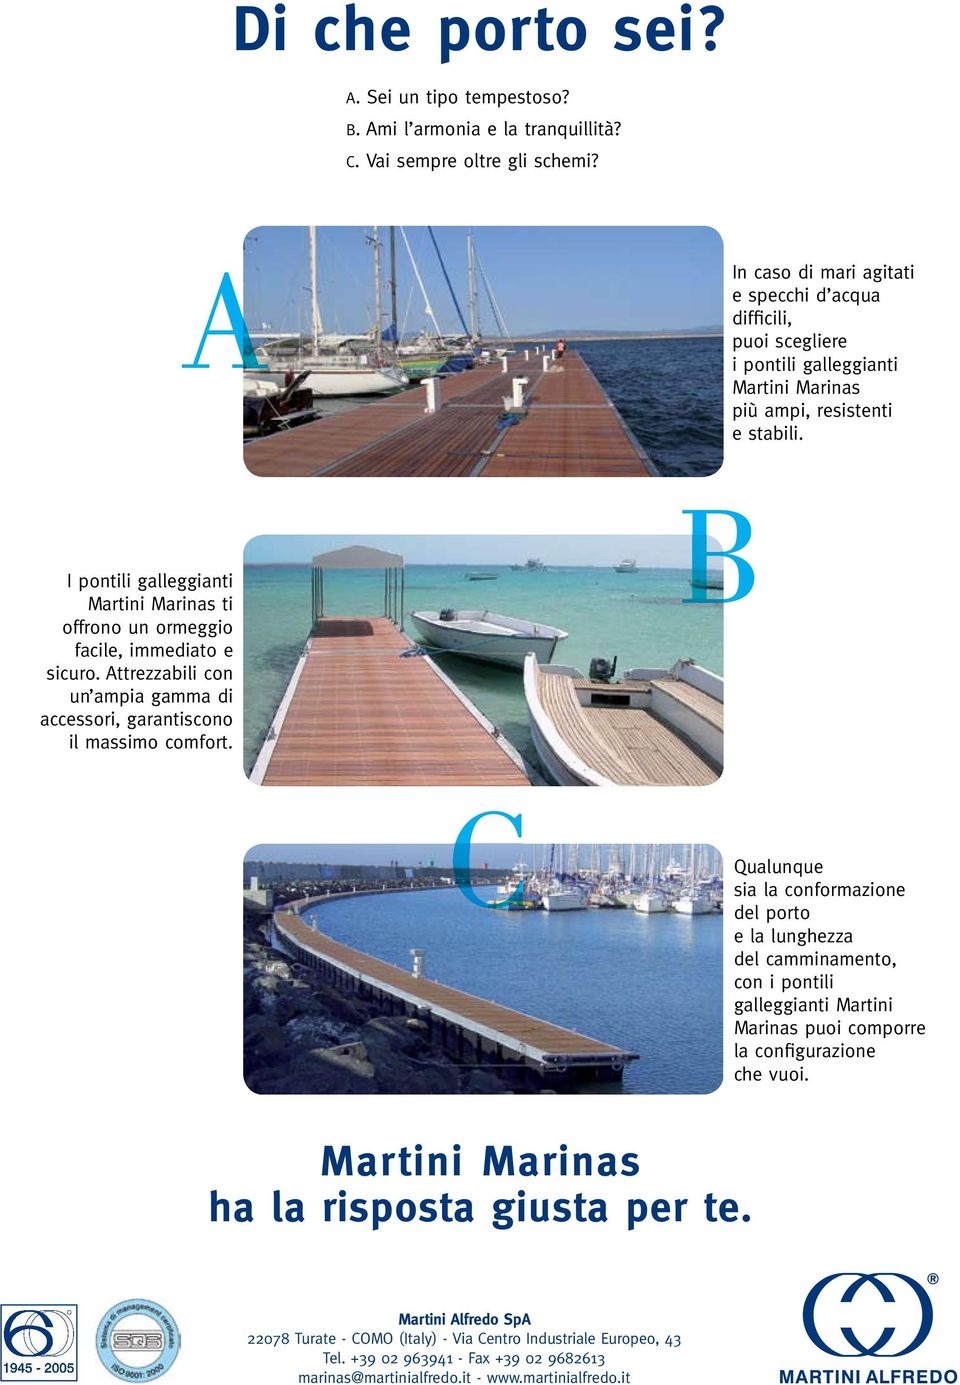 I pontili galleggianti Martini Marinas ti offrono un ormeggio facile, immediato e sicuro. Attrezzabili con un ampia gamma di accessori, garantiscono il massimo comfort.